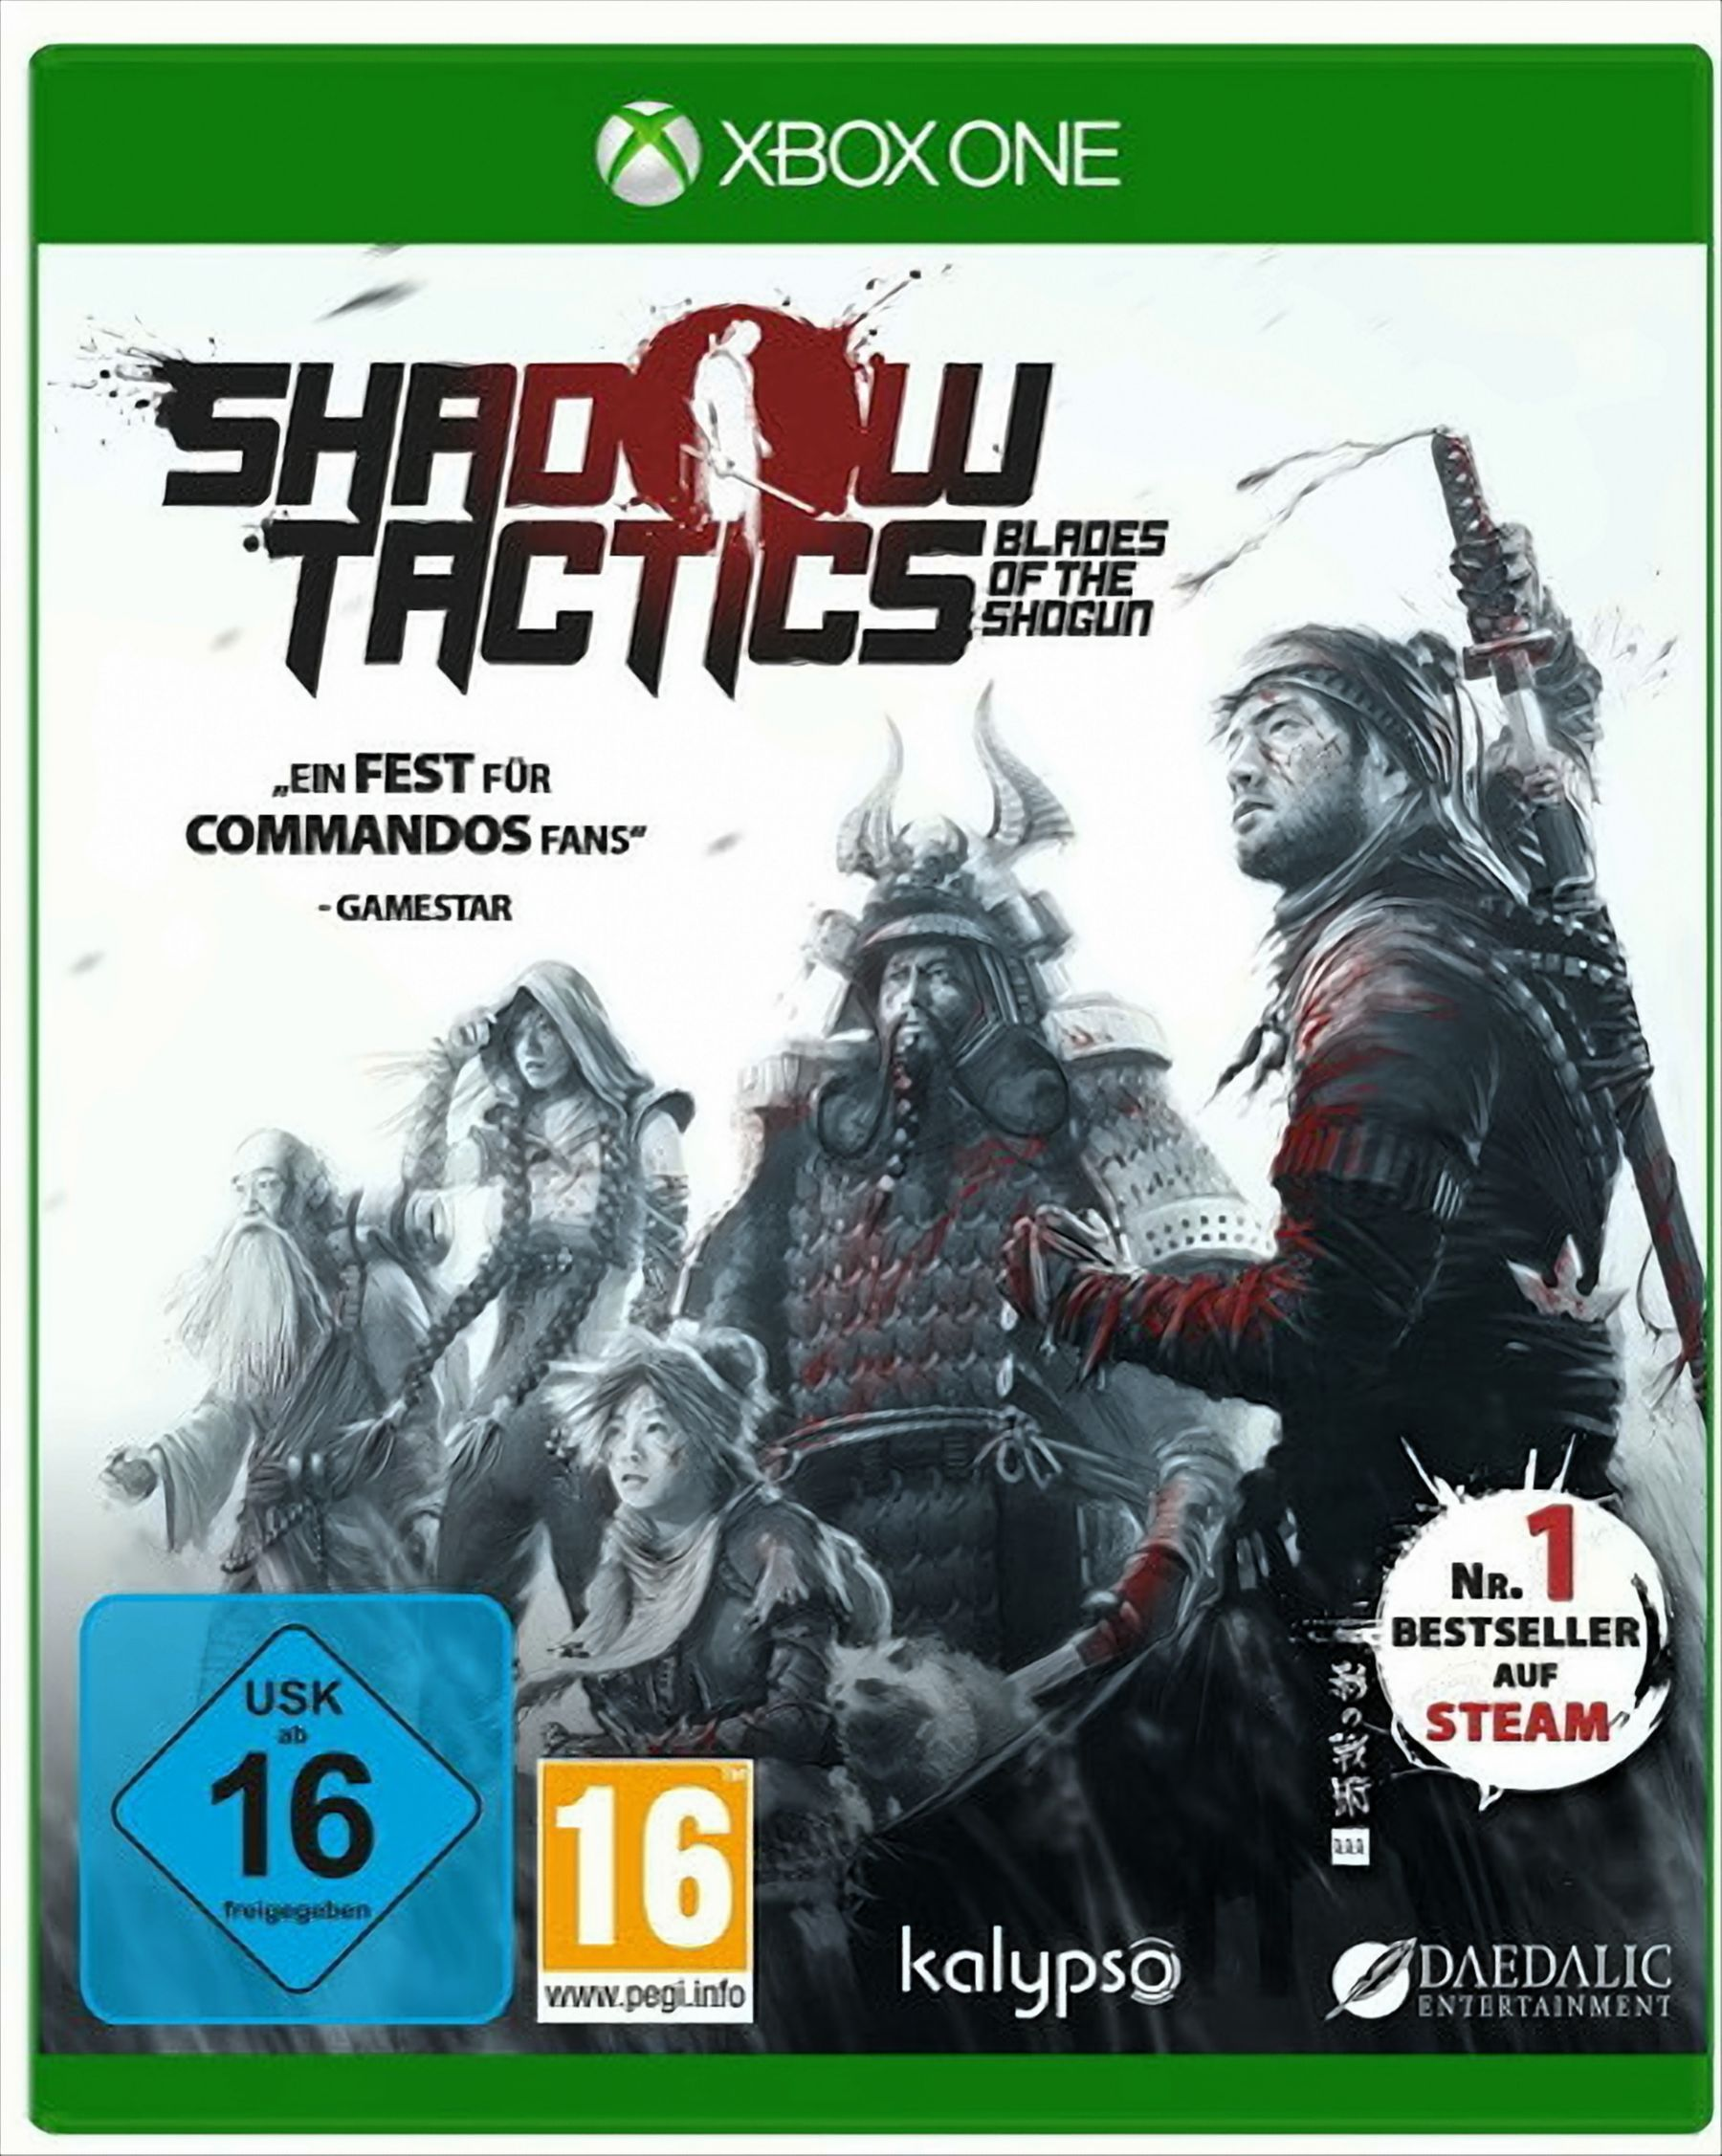 Of One] - Shogun Blades [Xbox Shadow Tactics - The